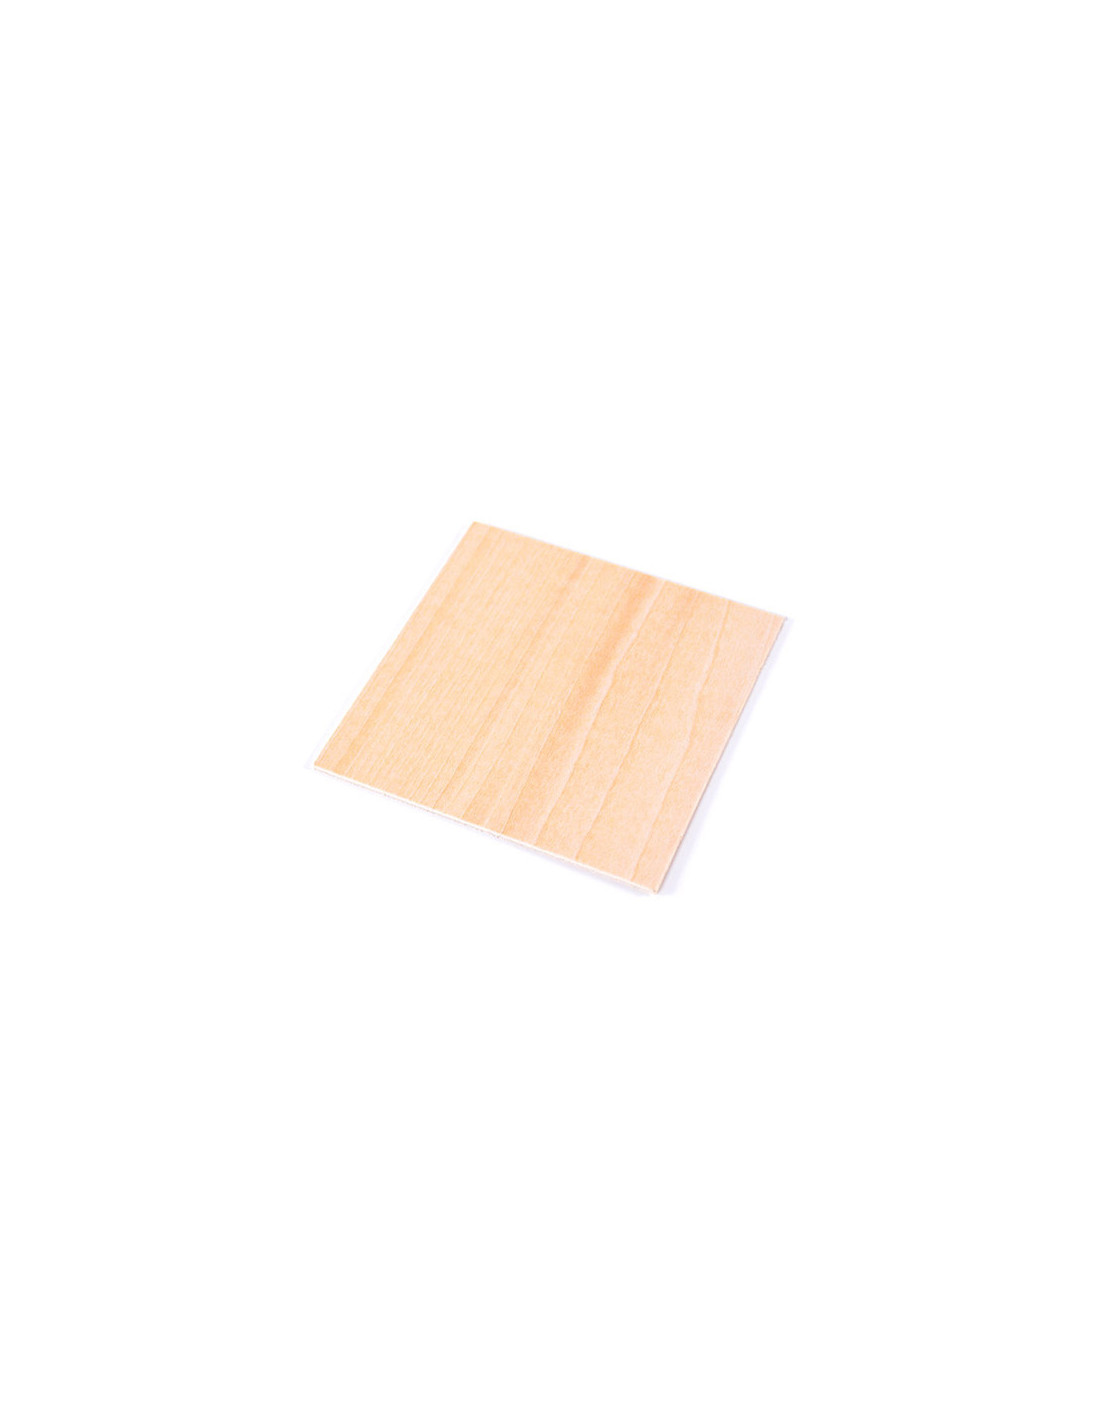 Snapmaker Blank Holz Quadrate (10er-Pack)